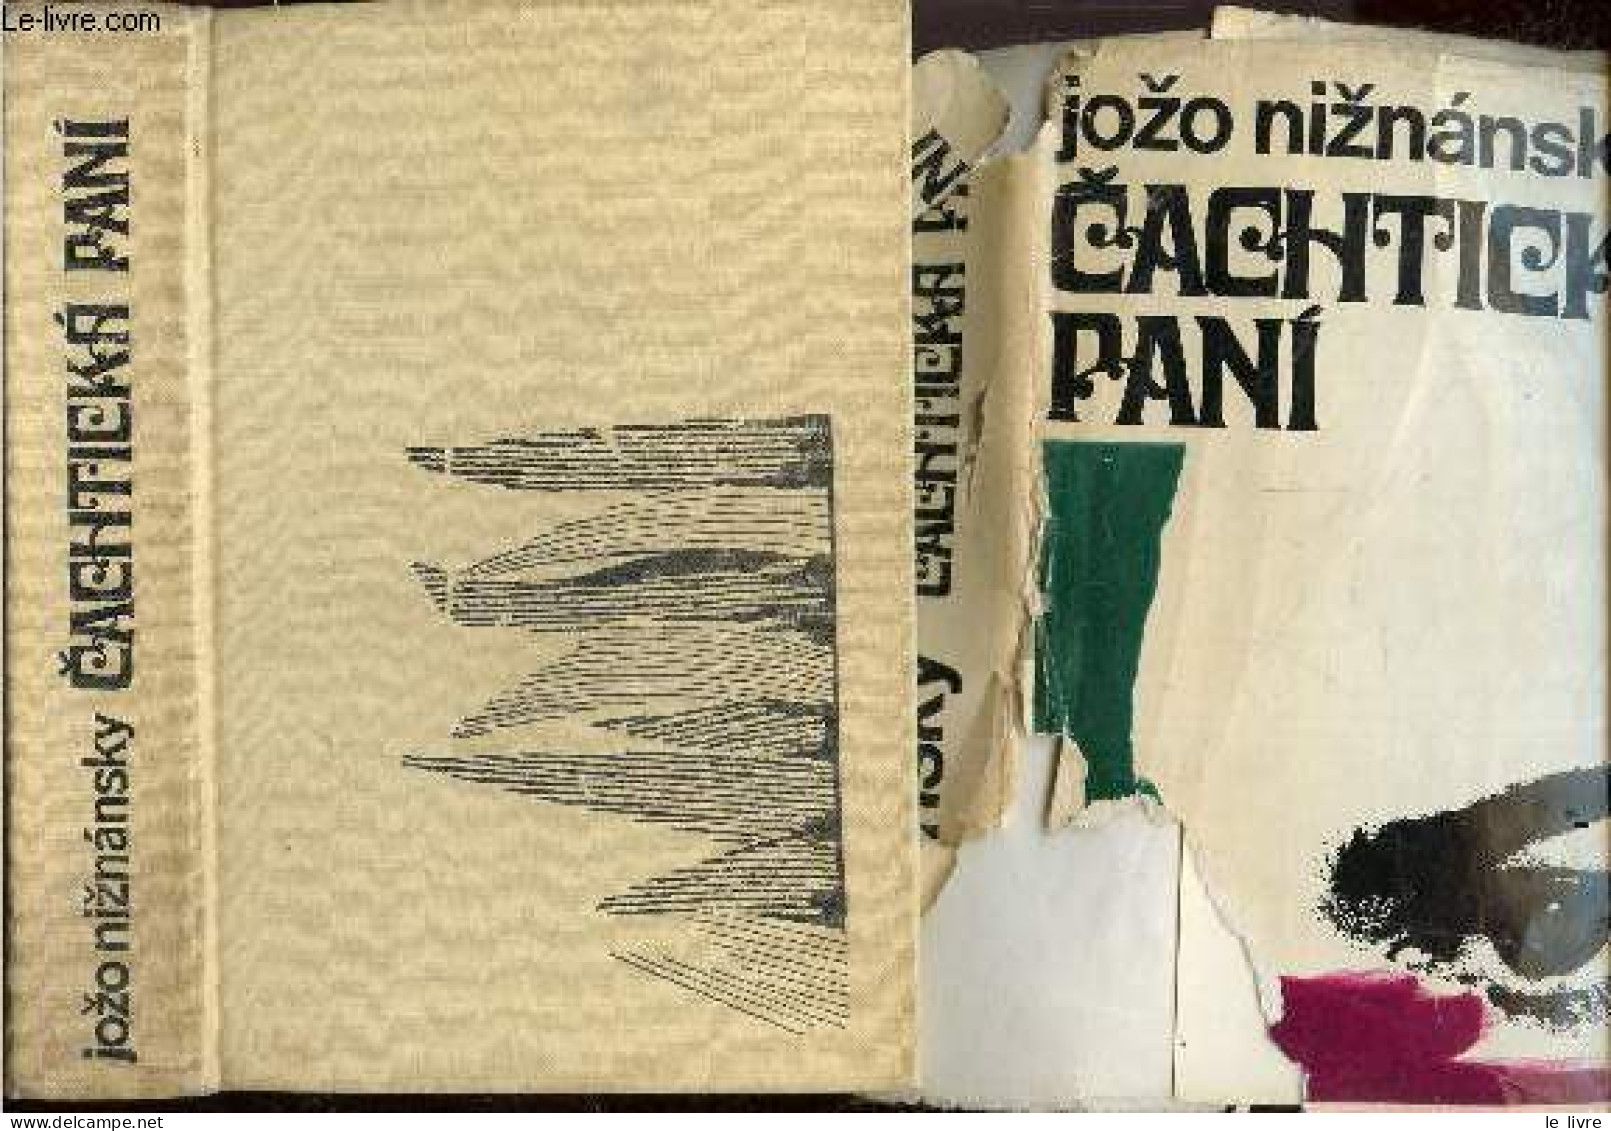 Cachticka Pani - Jozo Niznansky - Karel Klebes - 1970 - Culture